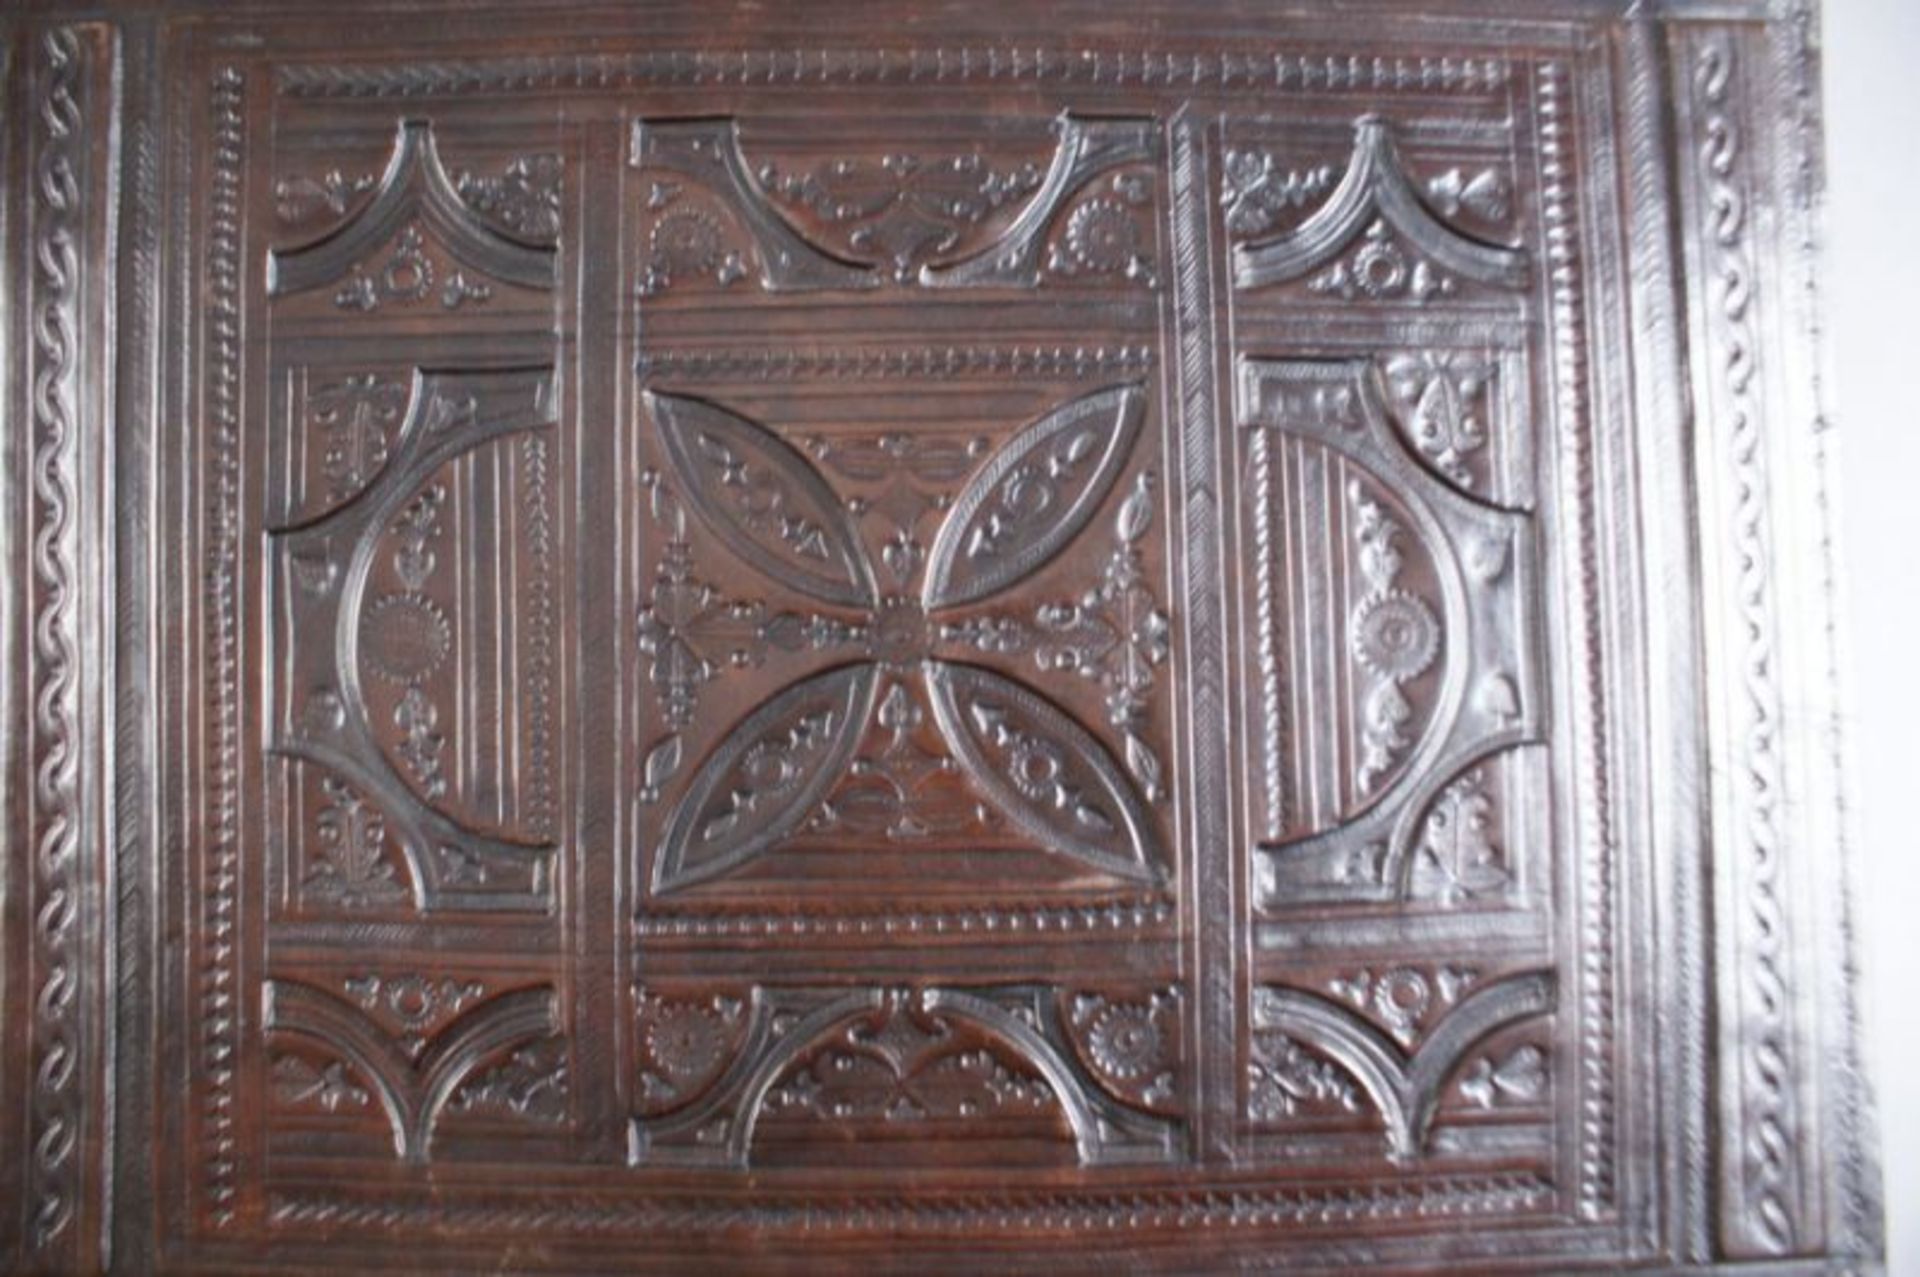 LEDER DOKUMENTENTASCHE aufwändig geprägtes Leder mit gotischen Ornamenten, 47x33x8 cm 20.17 % - Bild 5 aus 5